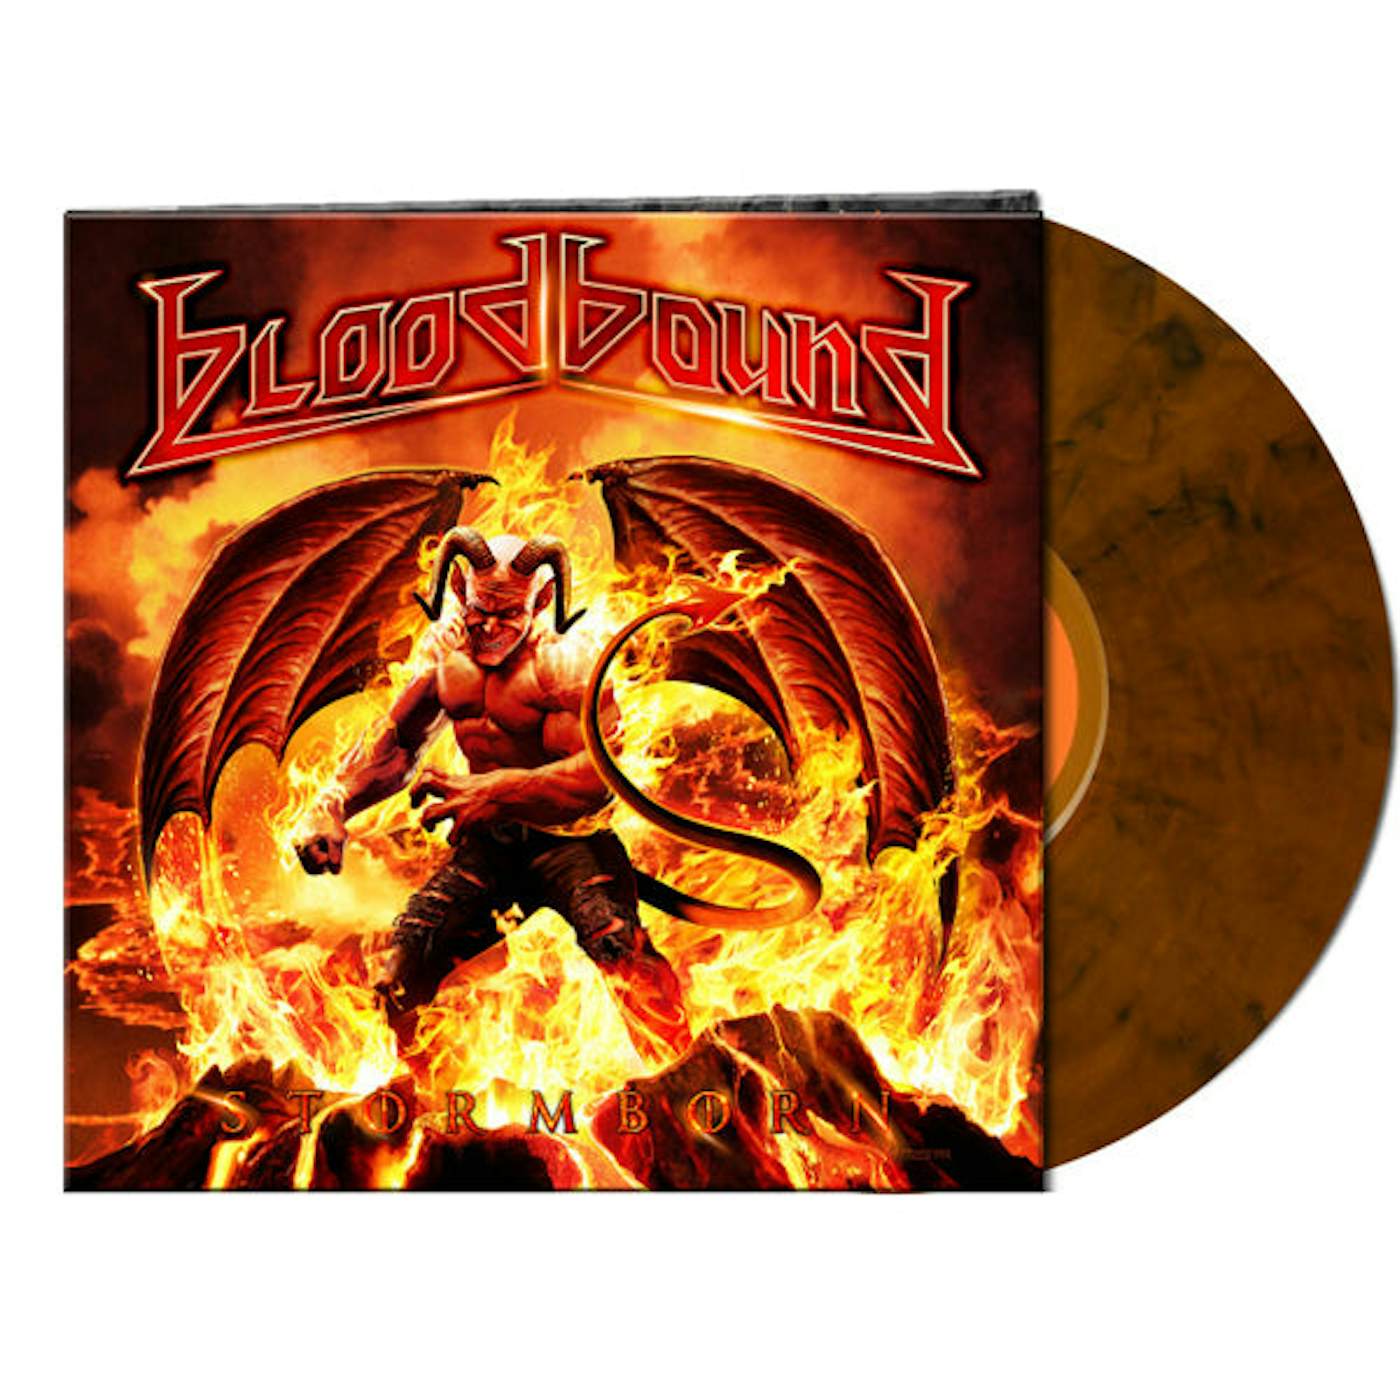 Bloodbound LP - Stormborn (Clear Orange/ Black Marble) (Vinyl)